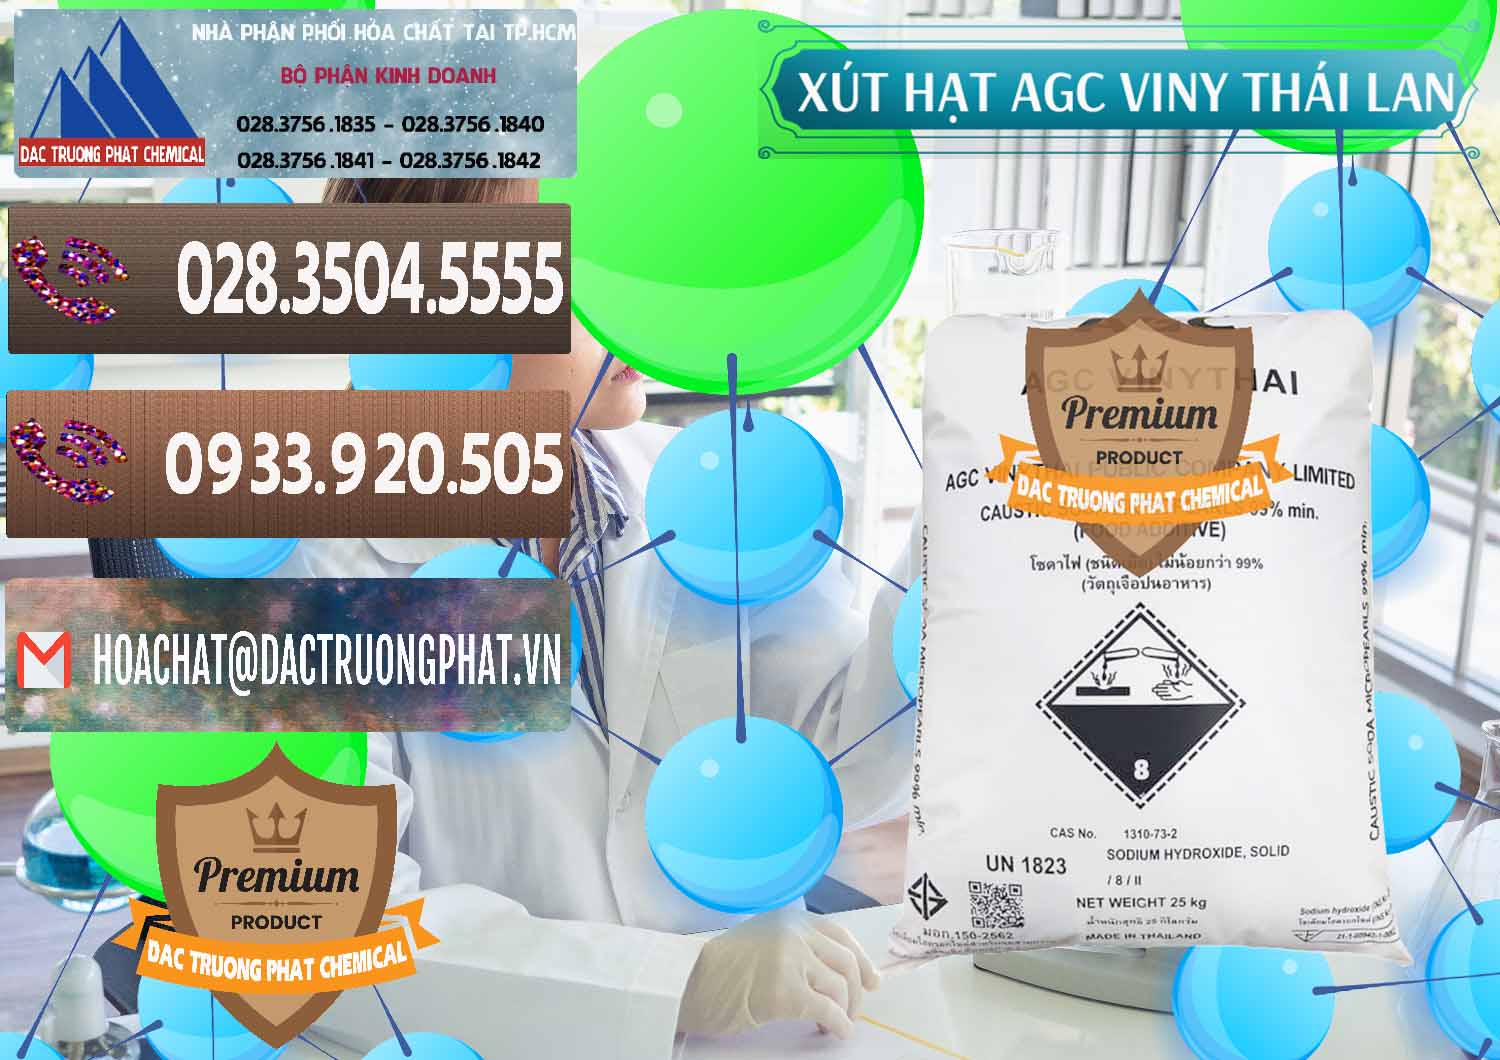 Nơi cung ứng & bán Xút Hạt - NaOH Bột 99% AGC Viny Thái Lan - 0399 - Chuyên cung cấp - phân phối hóa chất tại TP.HCM - hoachatviet.net